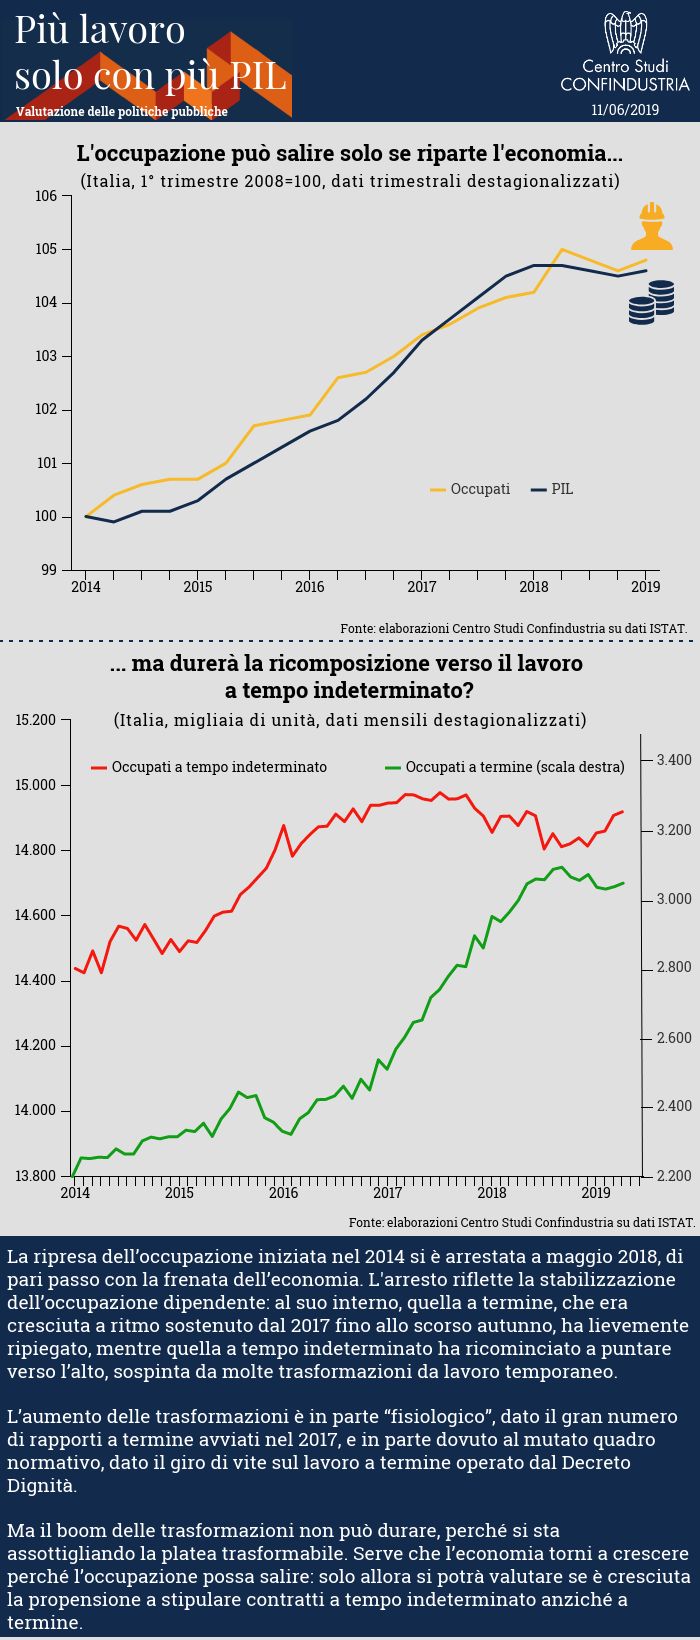 Infografica sul legame tra aumento dell'occupazione e la ripresa economica in Italia